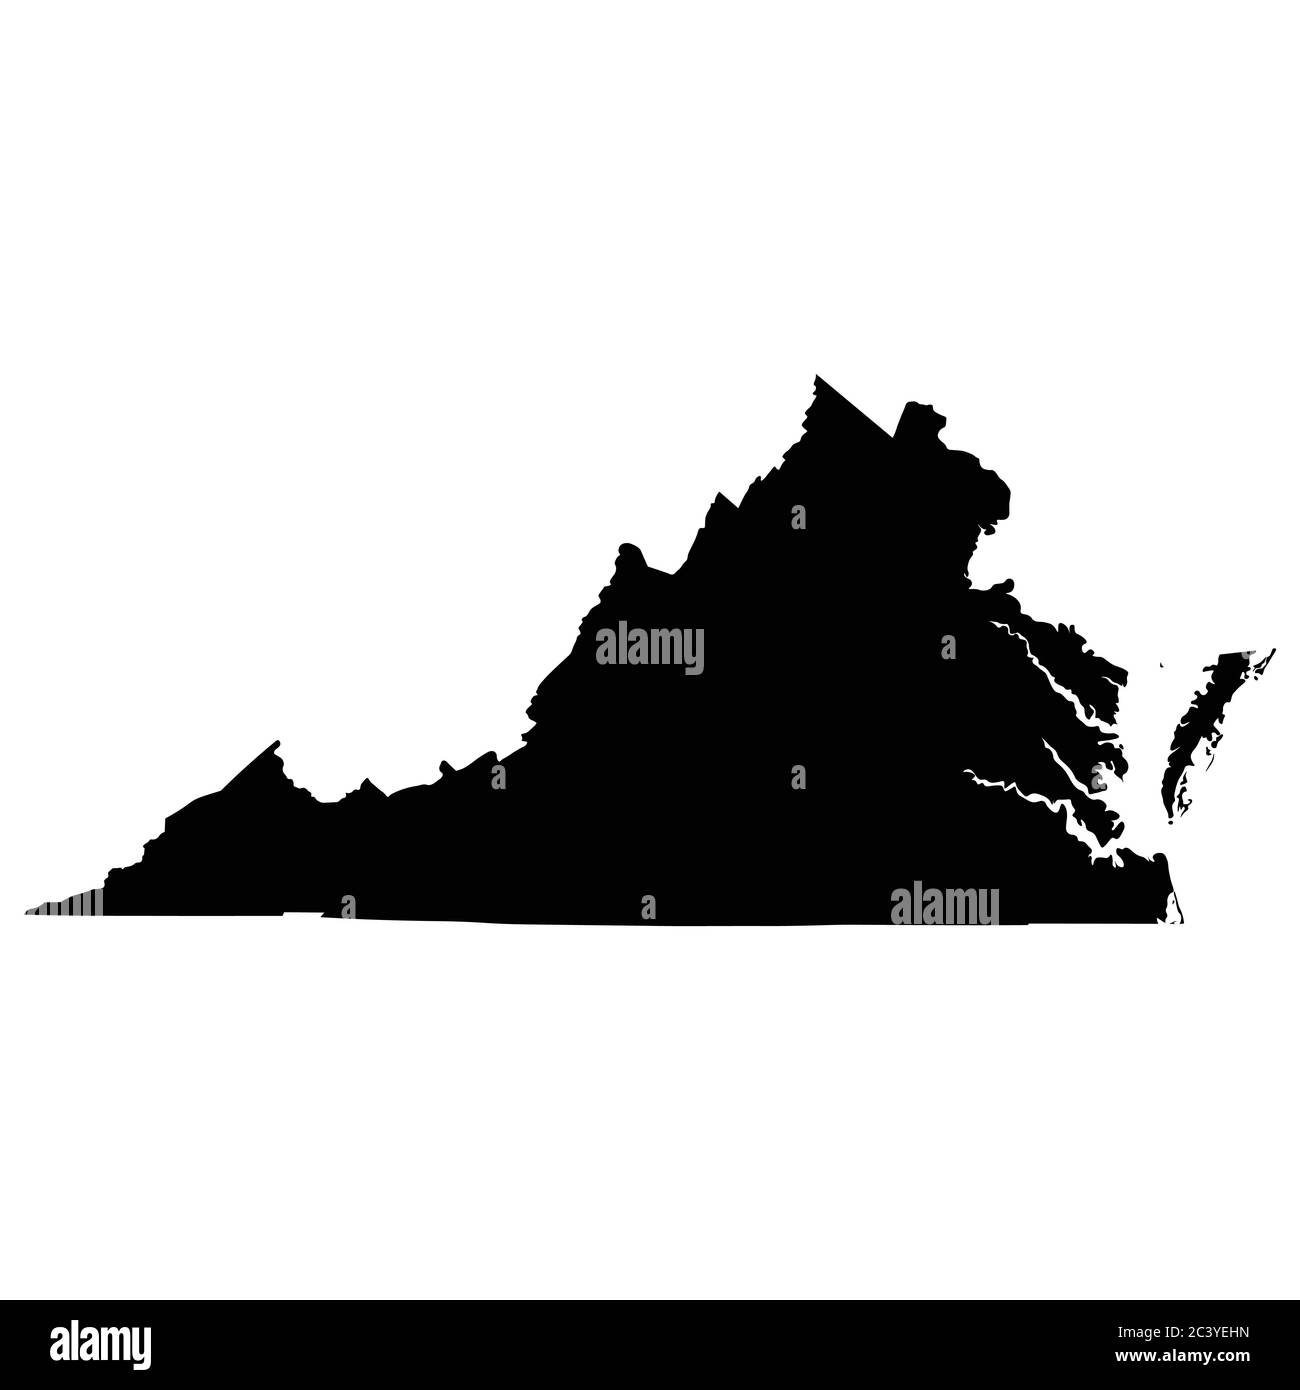 Virginia VA State Map USA. Schwarze Silhouette einfarbige Karte isoliert auf weißem Hintergrund. EPS-Vektor Stock Vektor